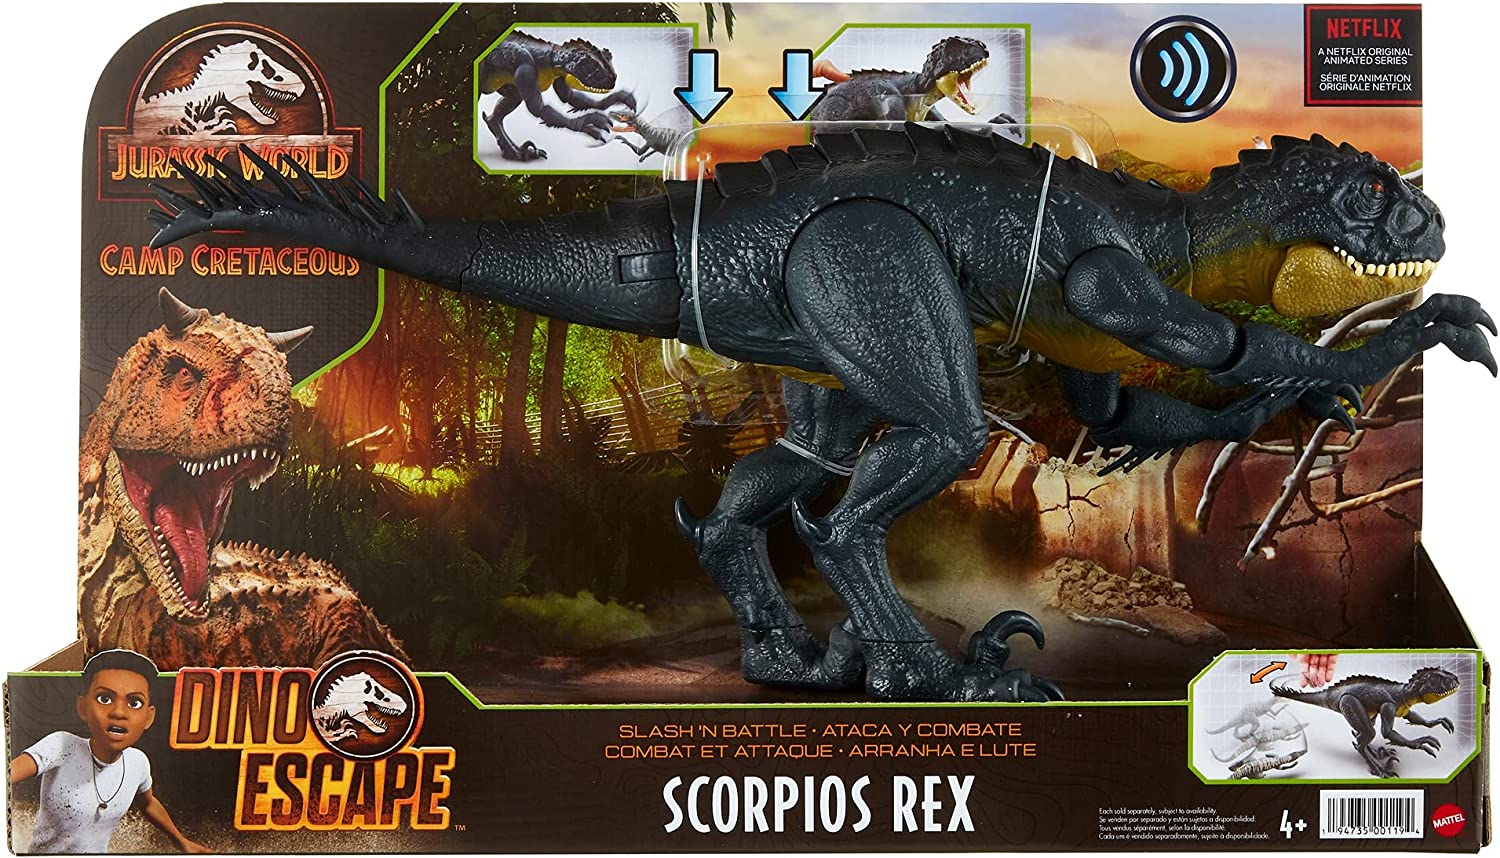 Jurassic World Scorpios Rex Dinosaurier Actionfigur mit Kampfaction